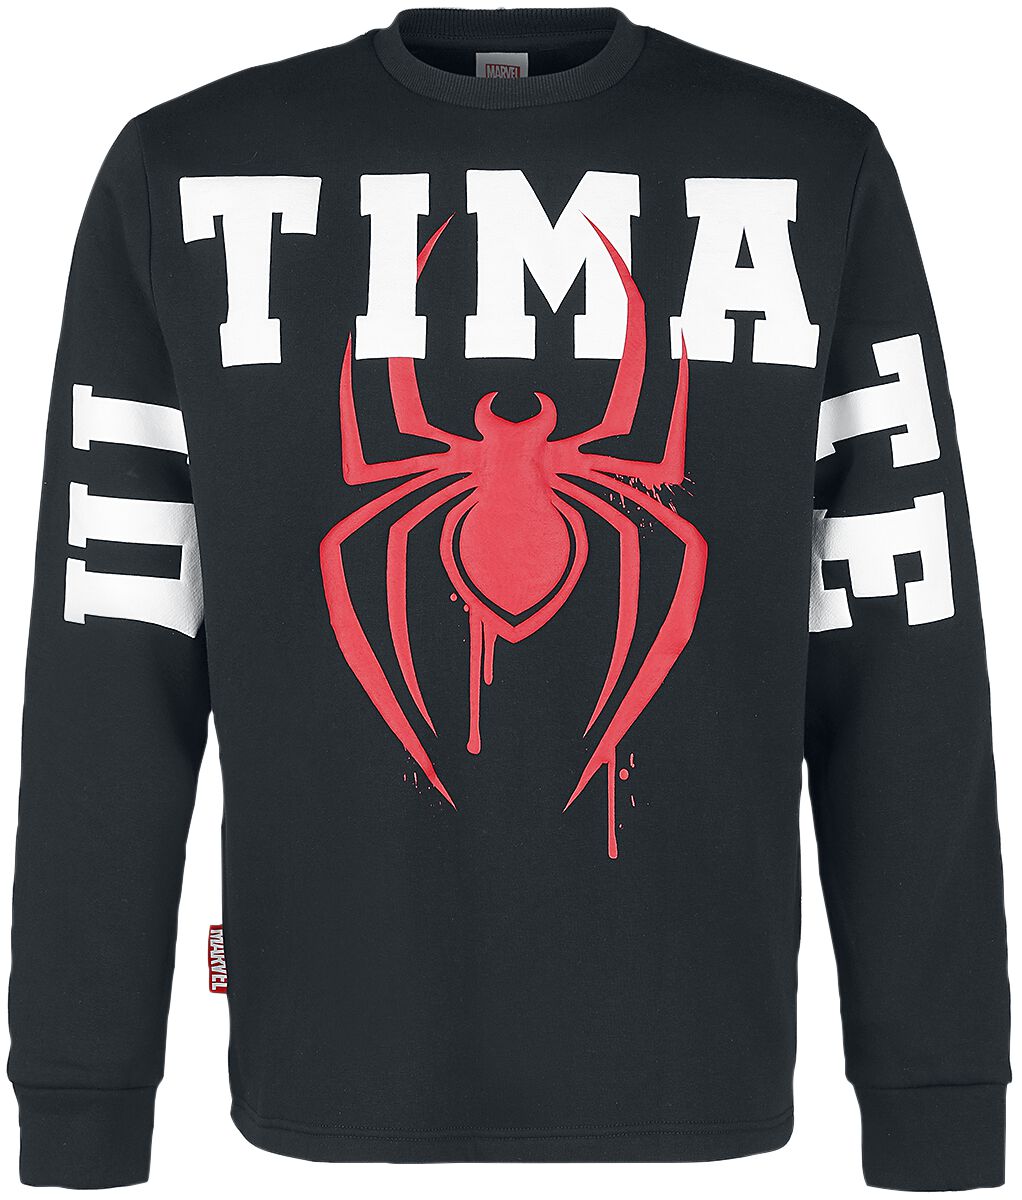 Spider-Man Ultimate Logo Sweatshirt schwarz